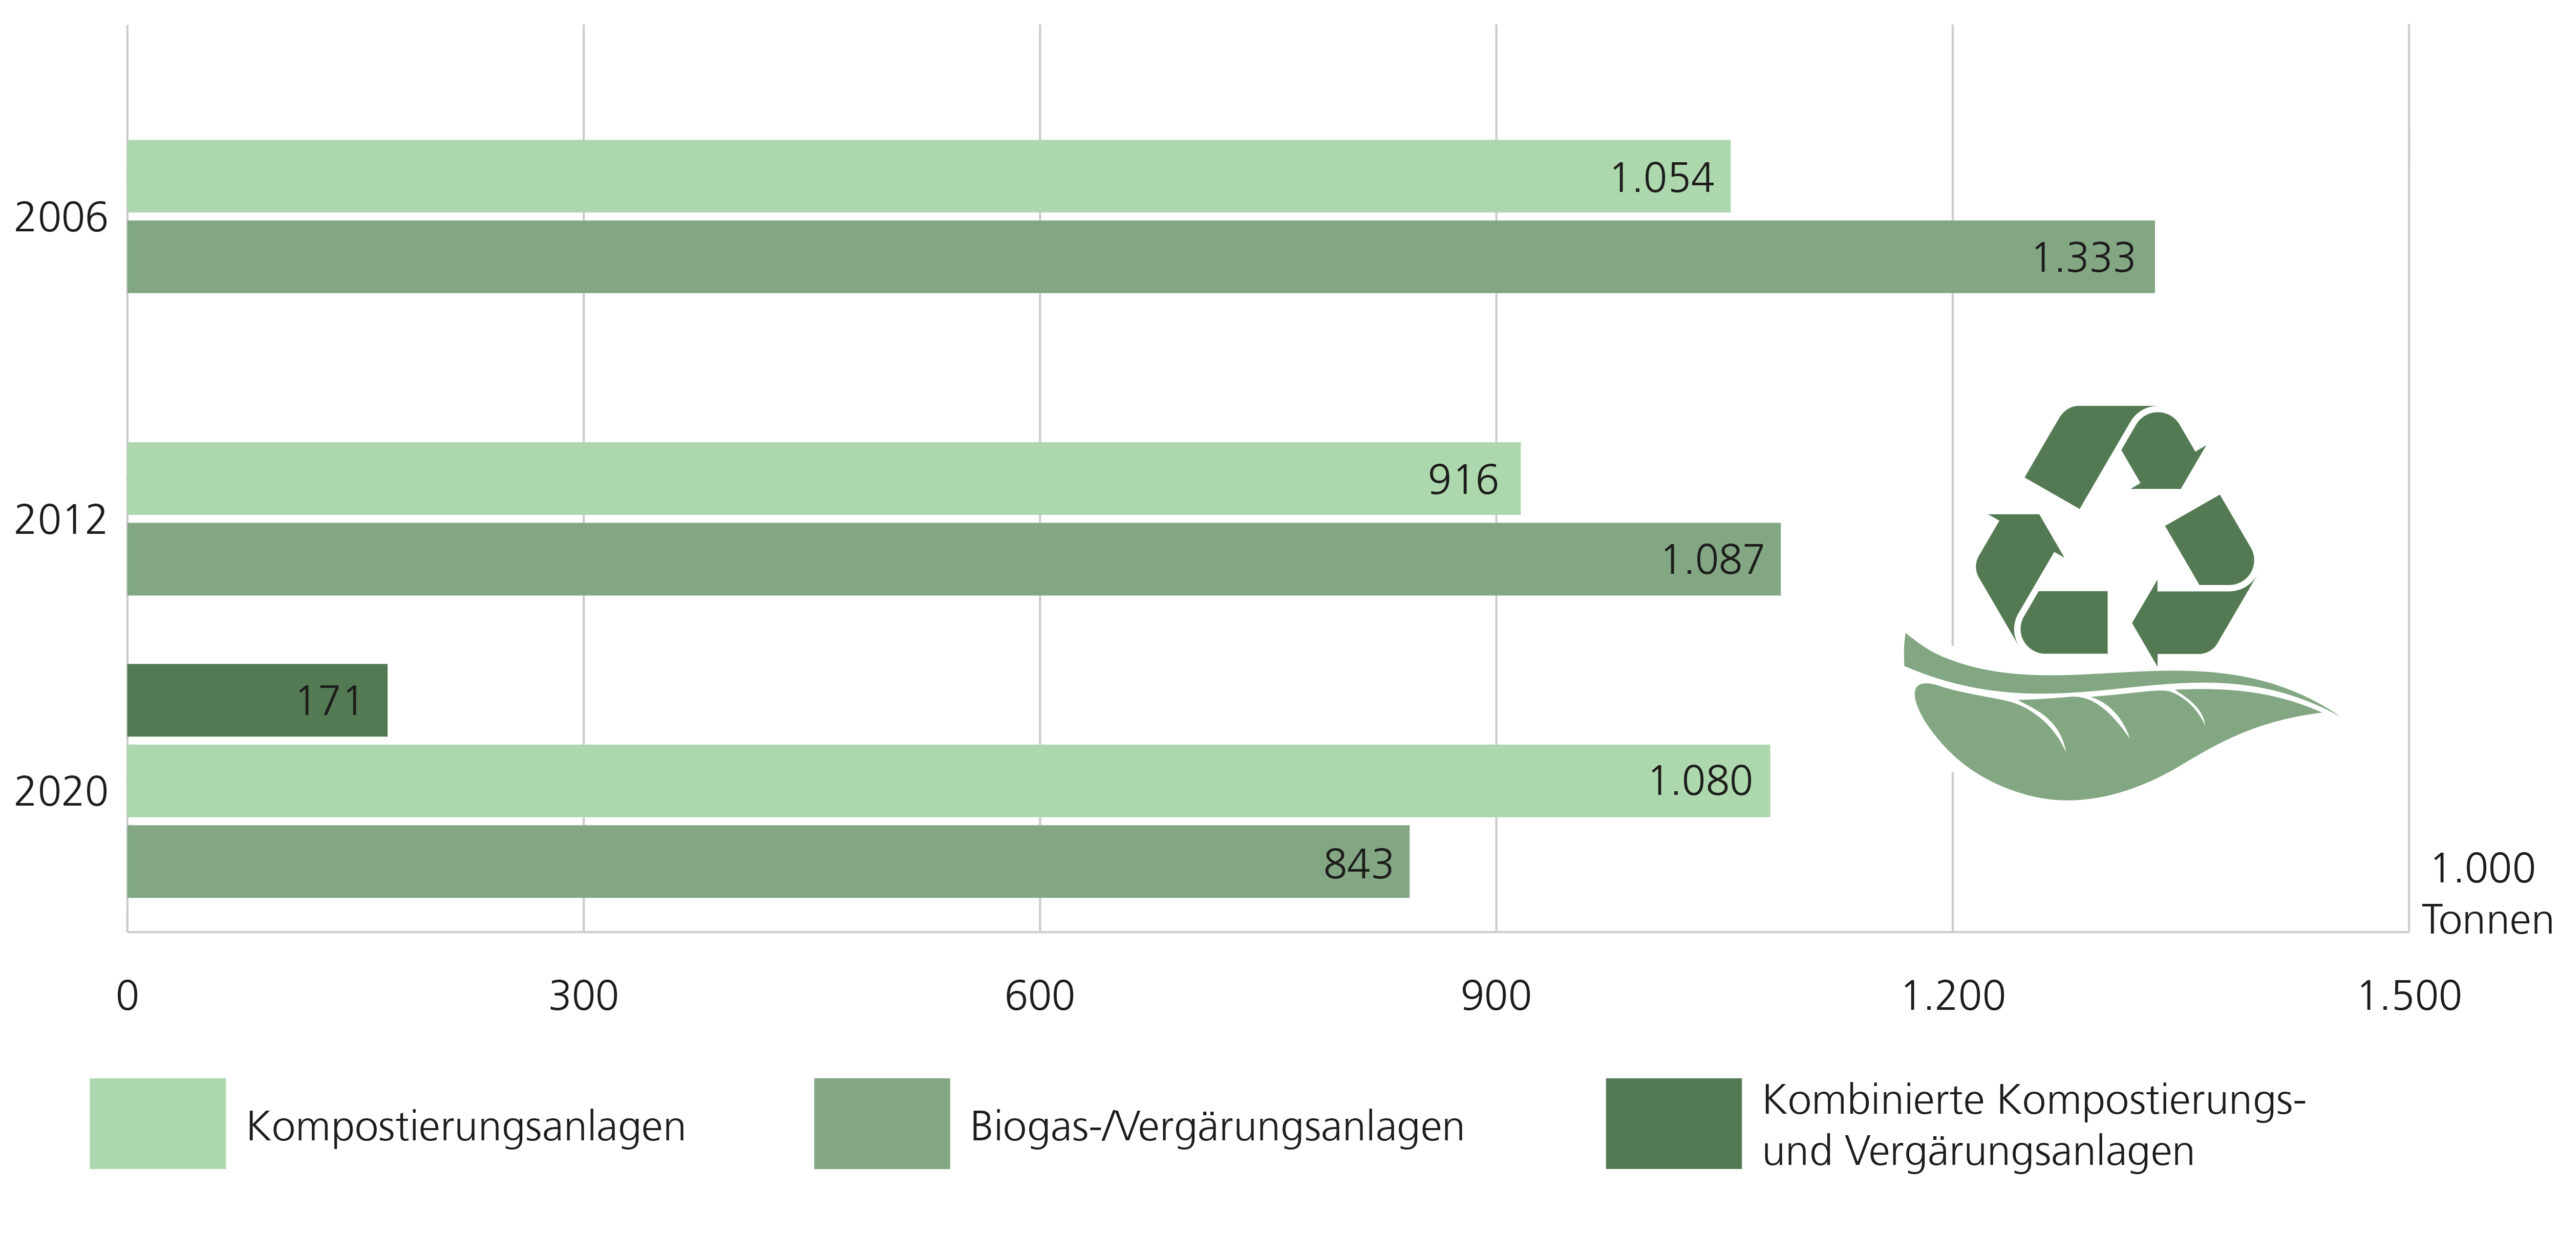 Das Abfallaufkommen biologischer Behandlungsanlagen in Niedersachsen, Vergleich der Jahre 2006, 2012 und 2020. Kompostierungsanlagen: 2006: 1.054.000 Tonnen; 2012: 916.000 Tonnen; 2020: 1.080.000 Tonnen AbfallBiogas-/Vergärungsanlagen: 2006: 1.333.000 Tonnen; 2012: 1.087.000 Tonnen; 2020: 843.000 Tonnen Abfall Kombinierte Kompostierungs- und Vergärungsanlagen: 2020: 171.000 Tonnen. 